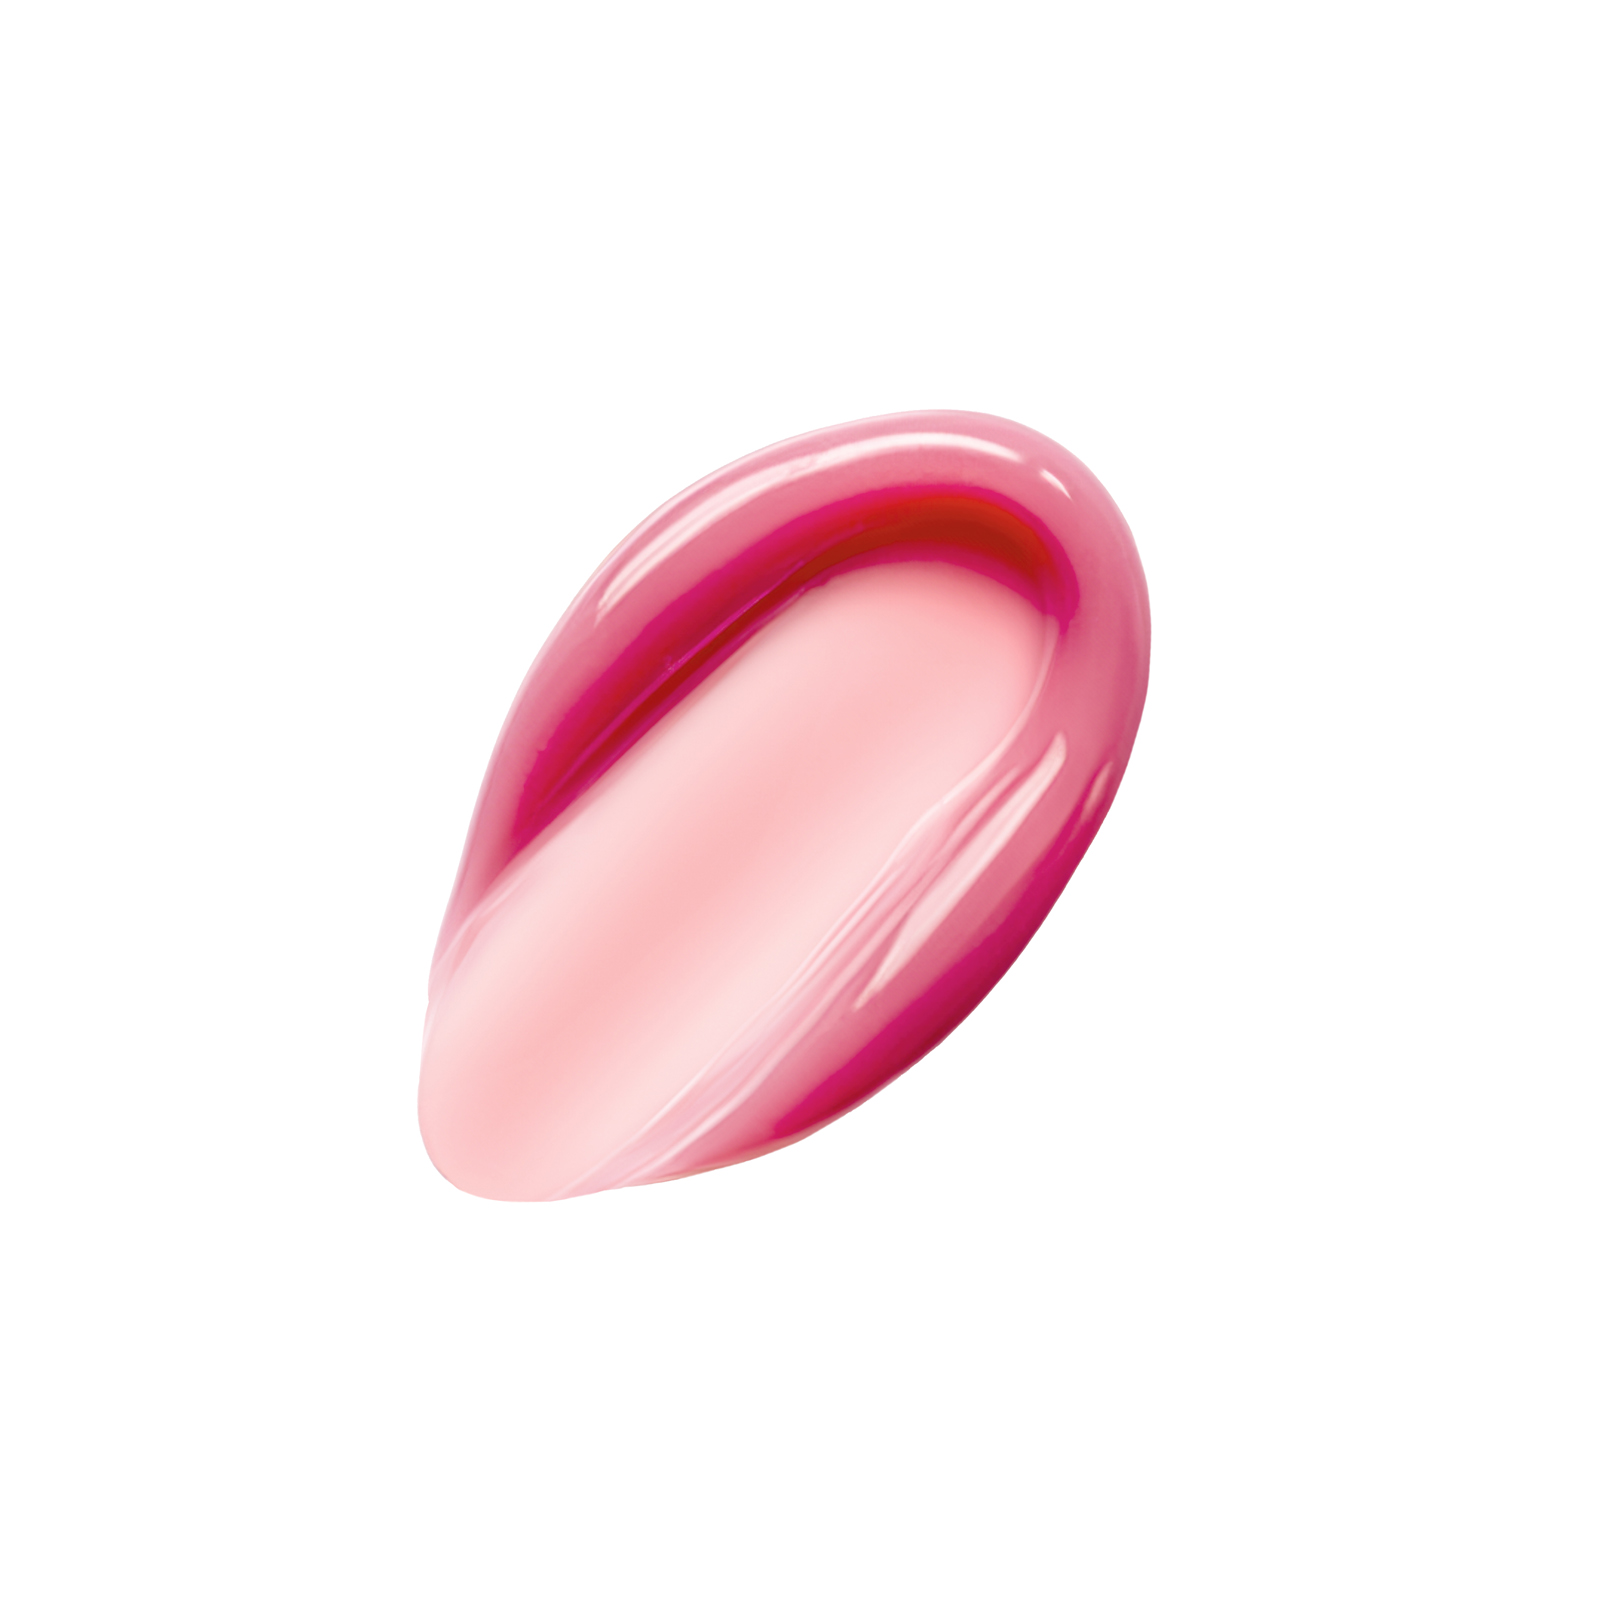    Marbled Lip Balm